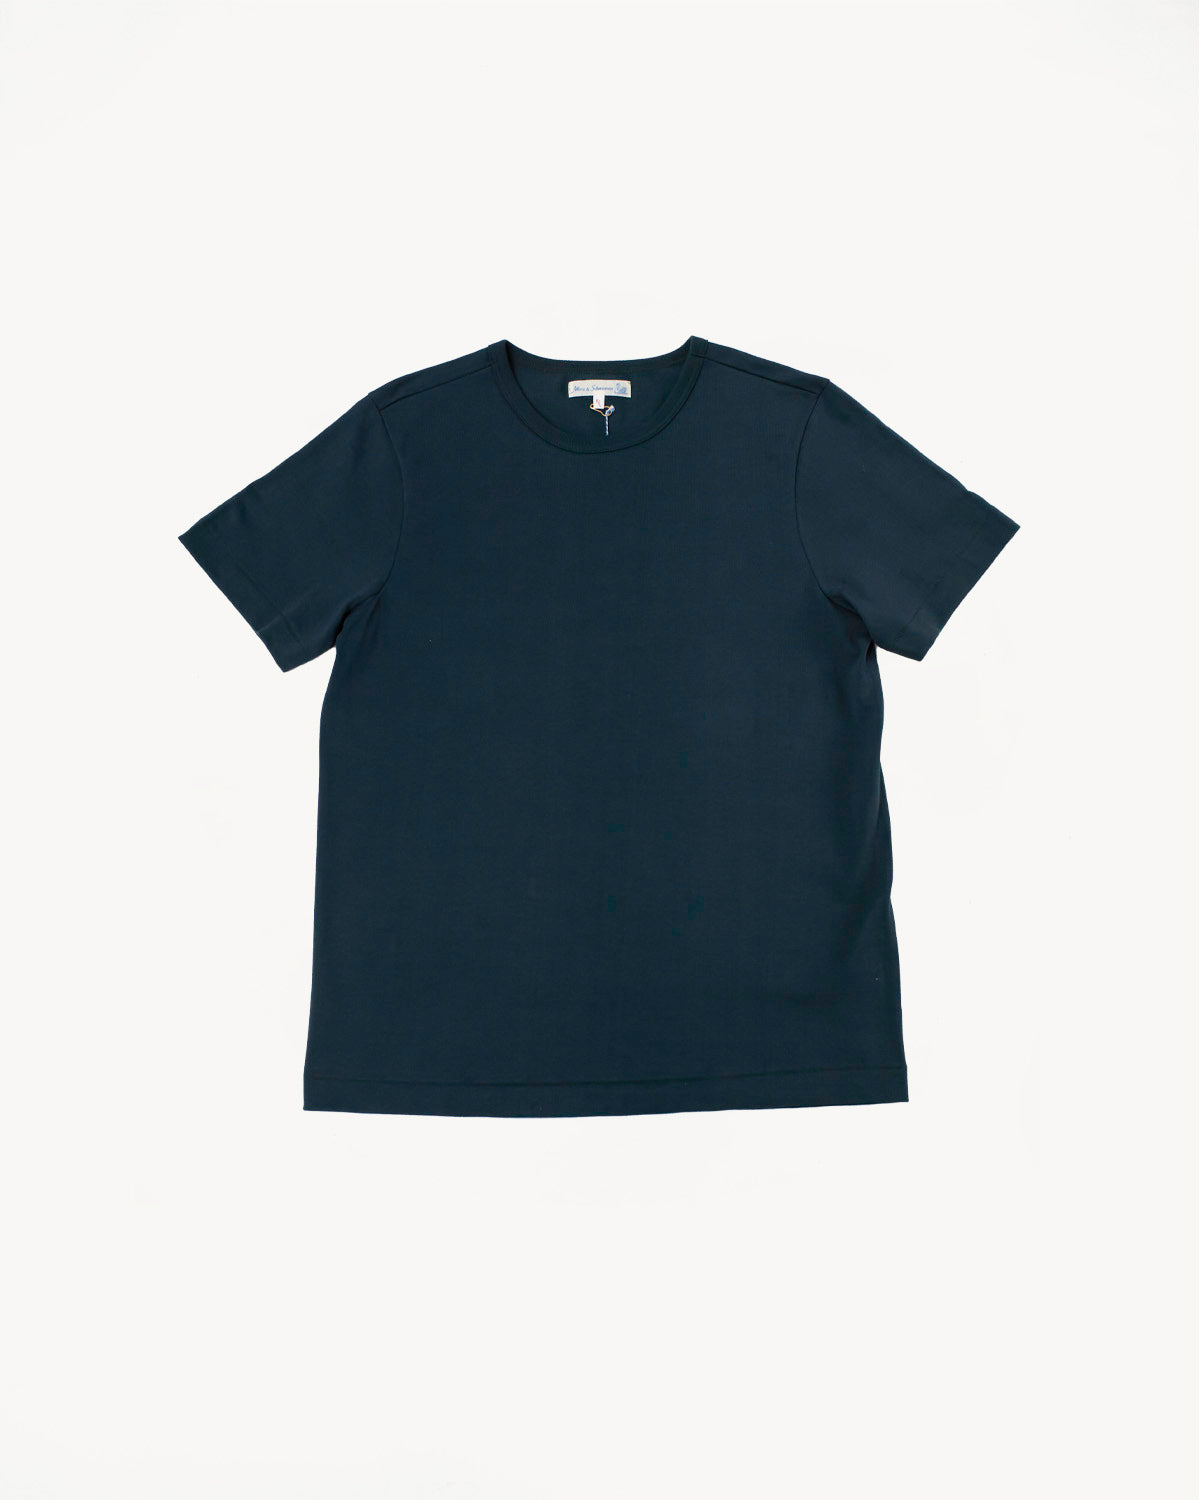 215.613 - 8.6oz Loopwheeled T-Shirt Classic Fit - Mineral Blue